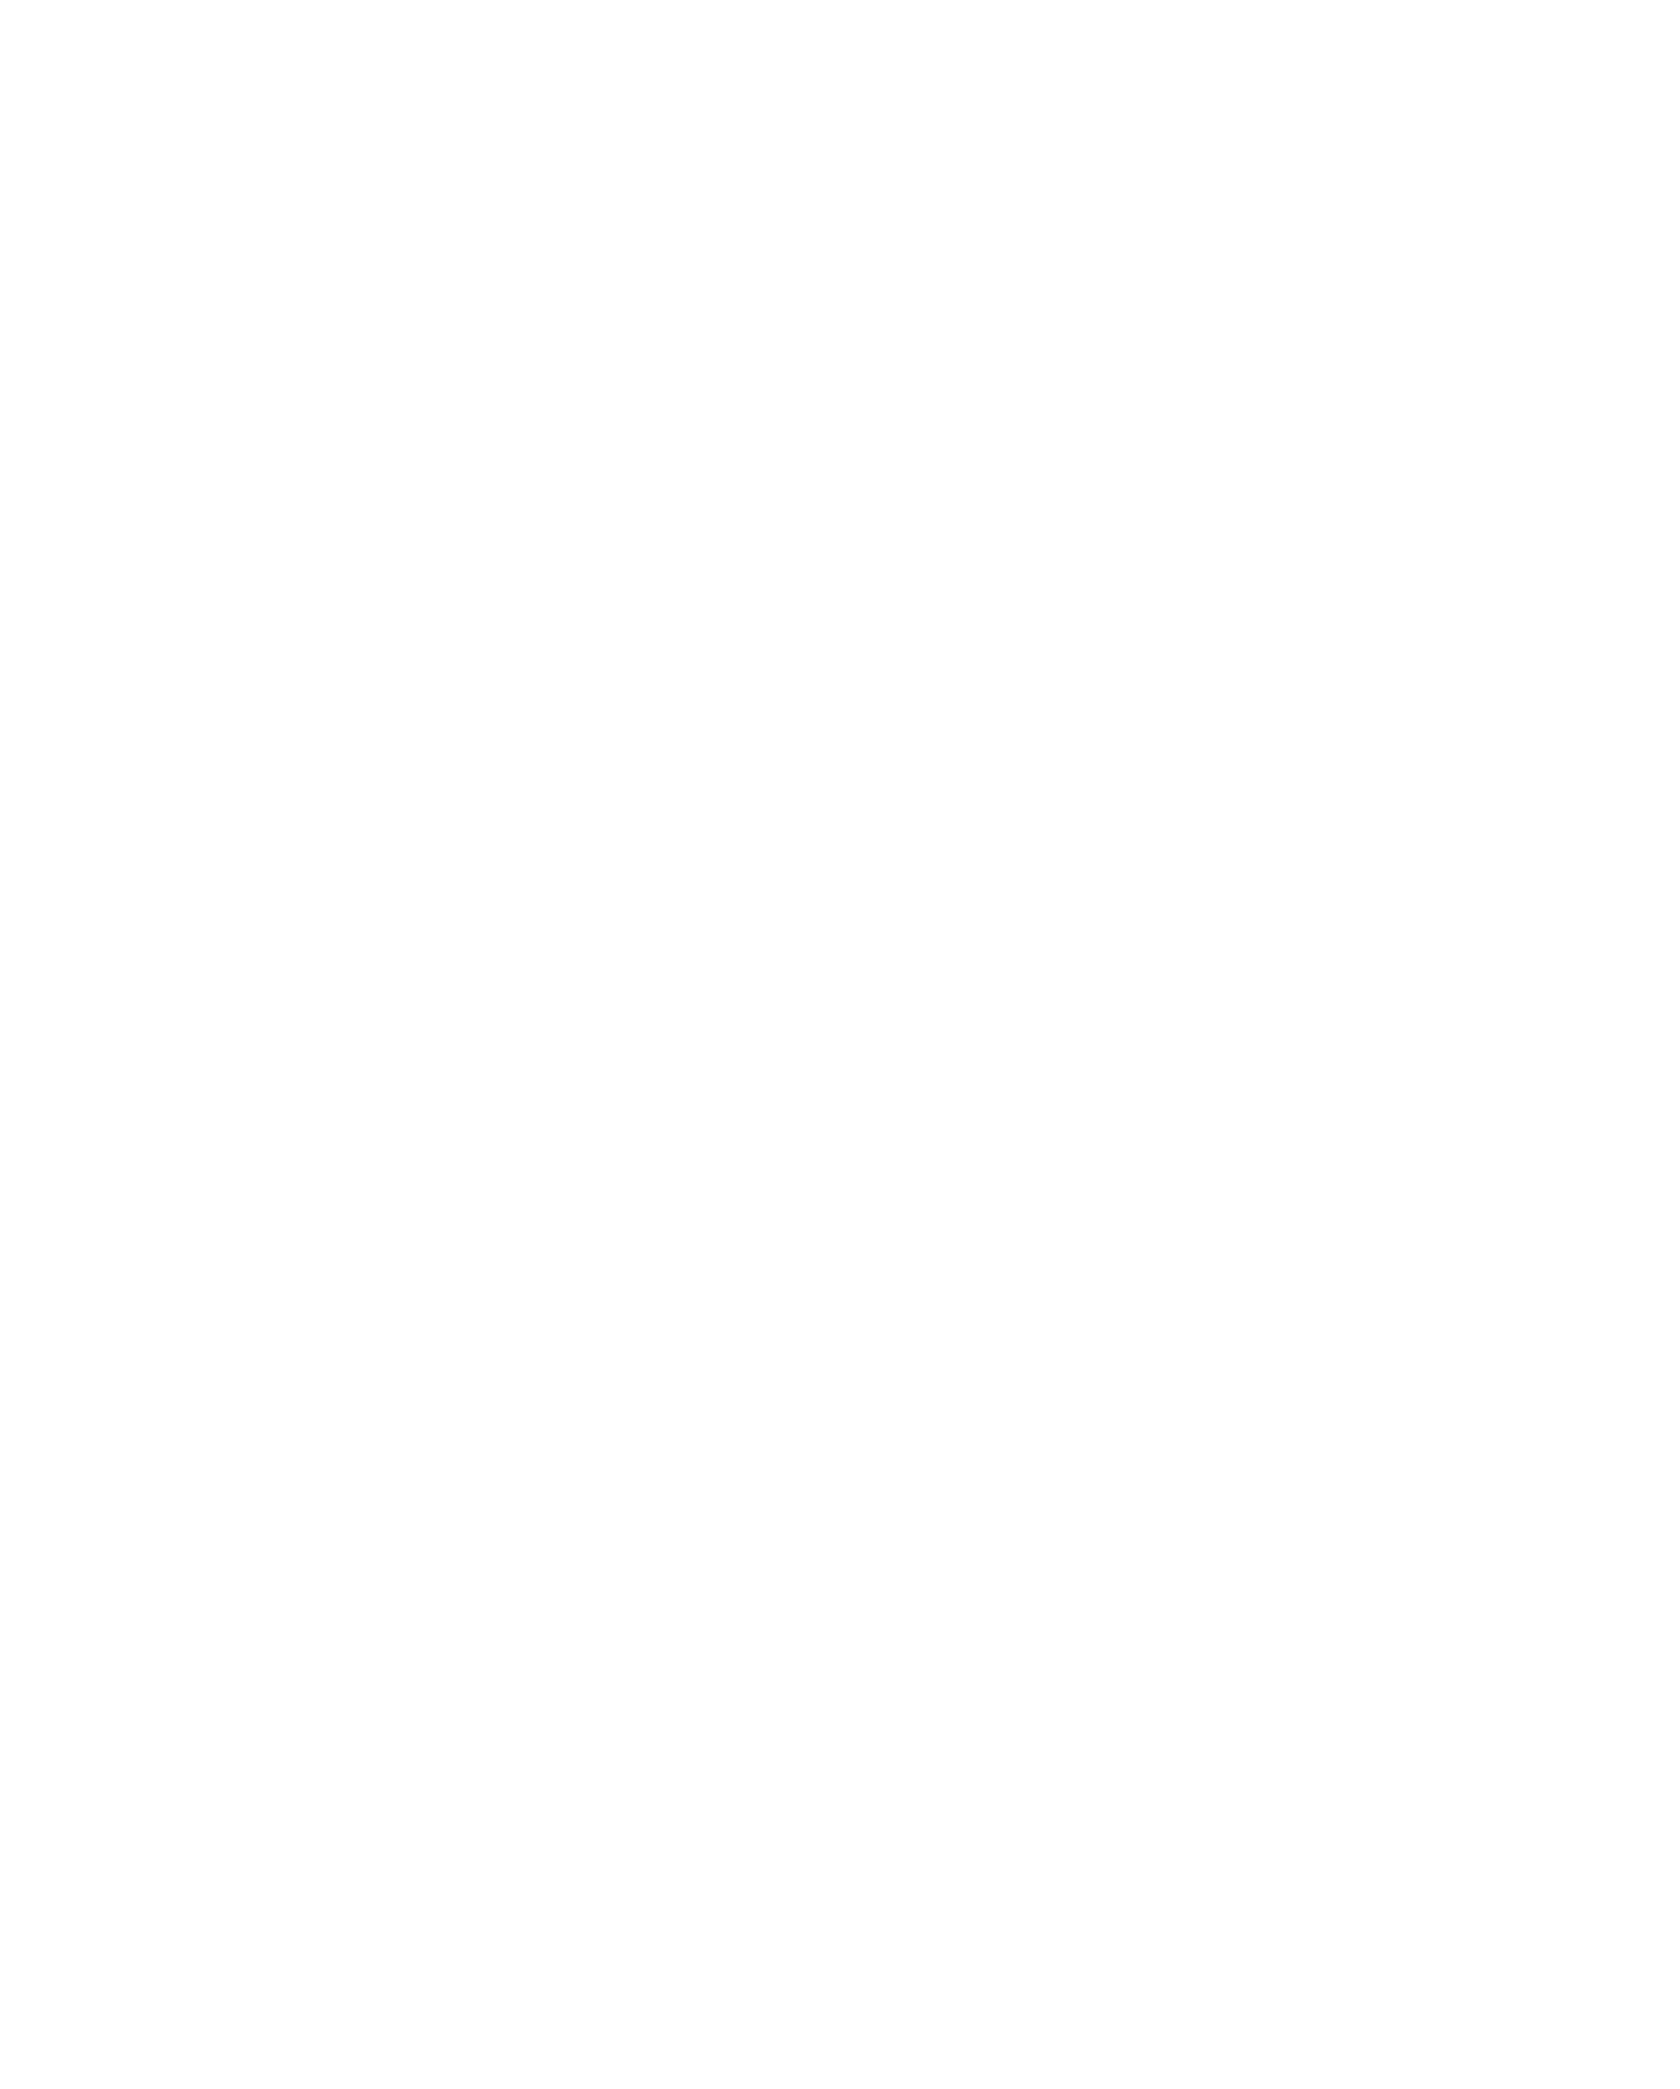 На презентации каталога БСД «Кто есть кто?» с Татьяной Щегельской и Владимиром Голубевым 27.08.2008